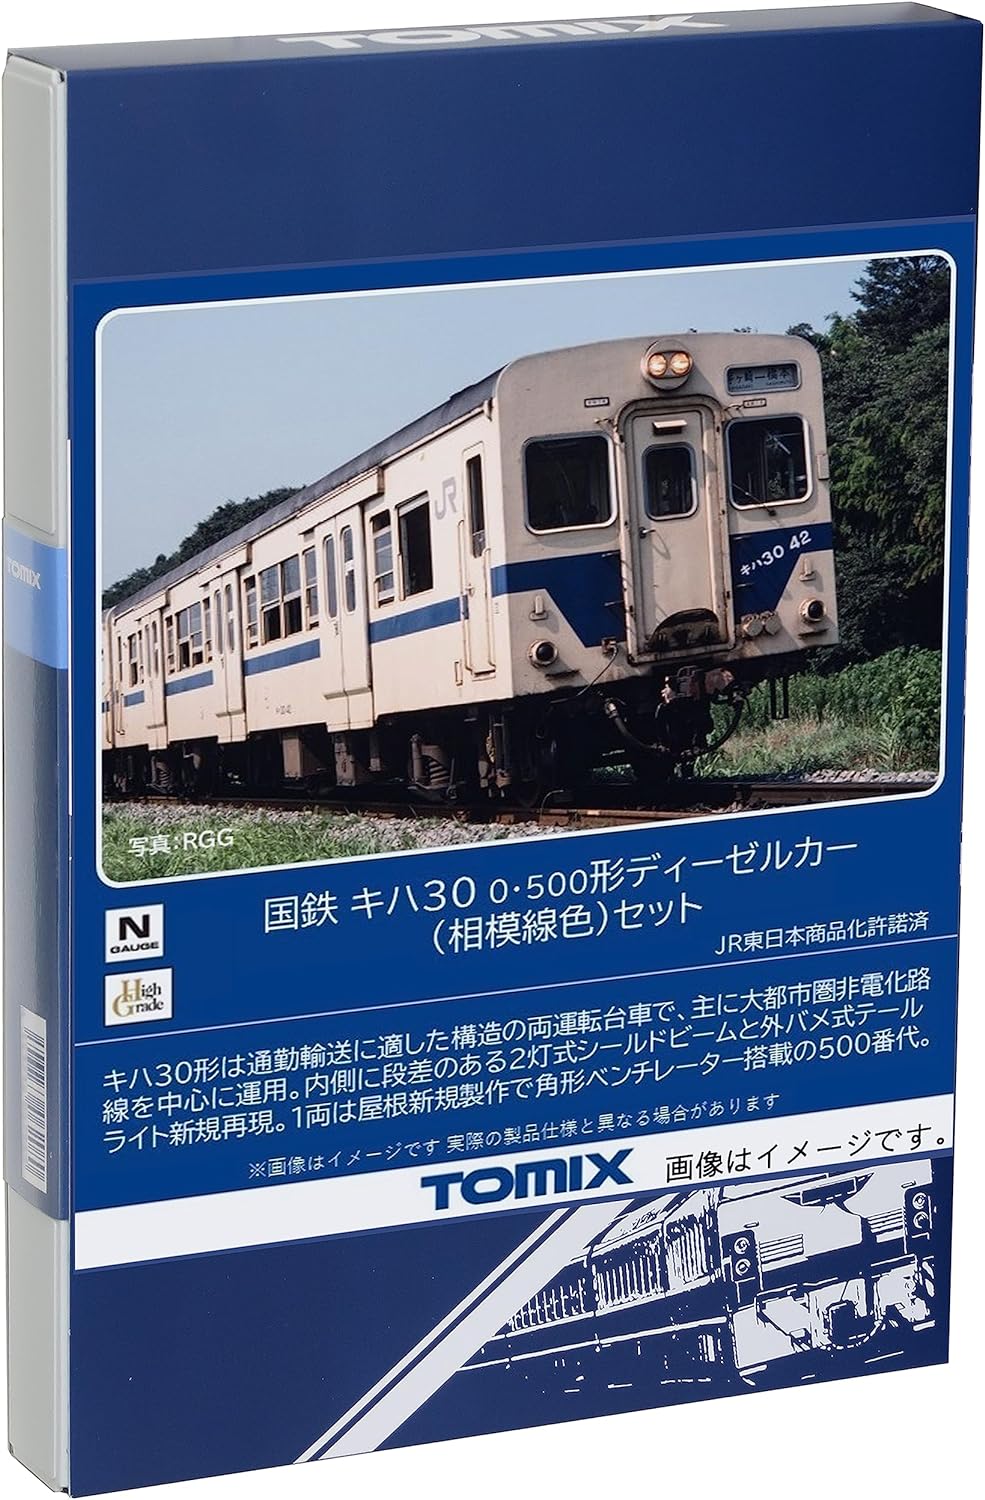 Tomix Diesel Car (N) | BanzaiHobby